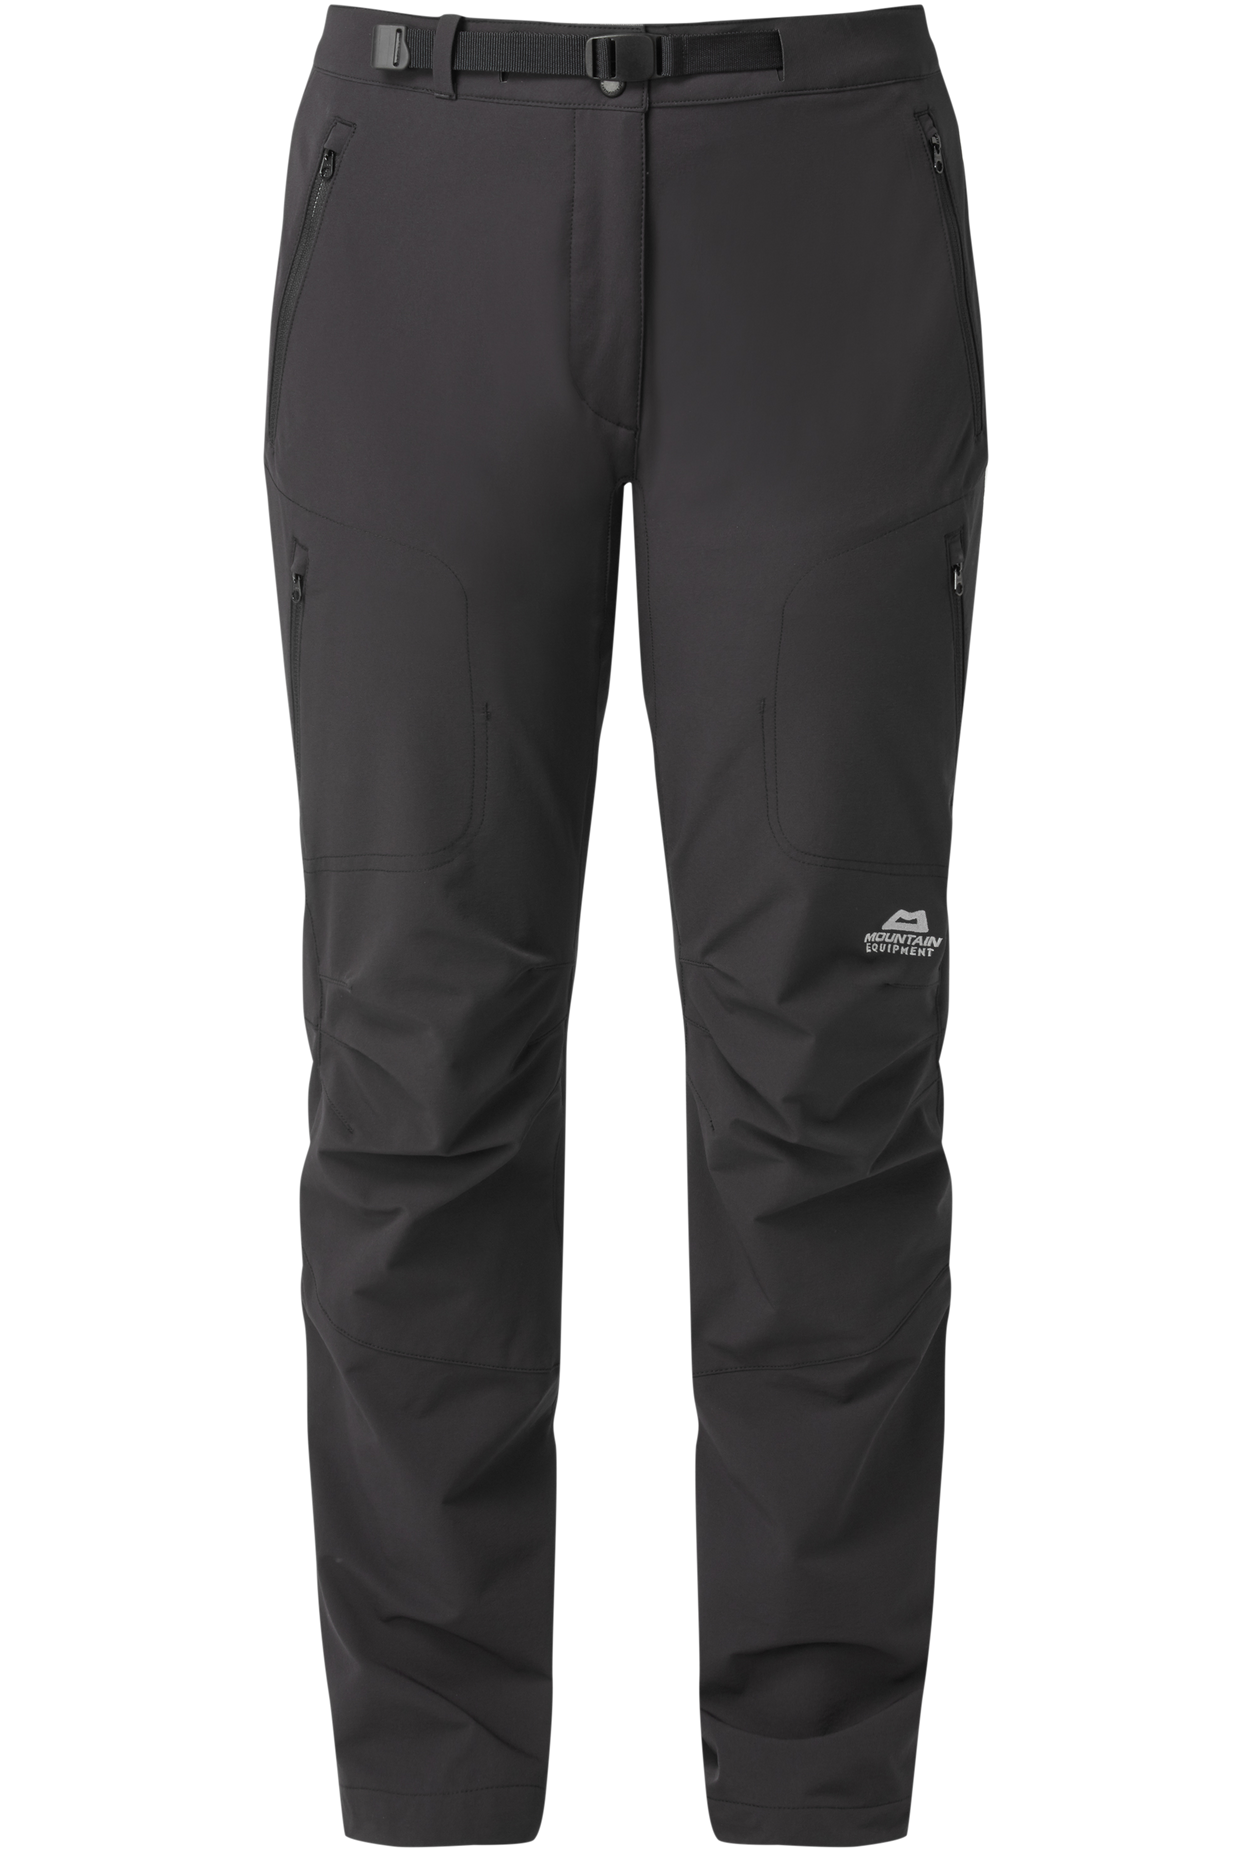 Mountain Equipment dámské softshellové kalhoty Chamois Wmns Pant - prodloužené Barva: black, Velikost: 12/M